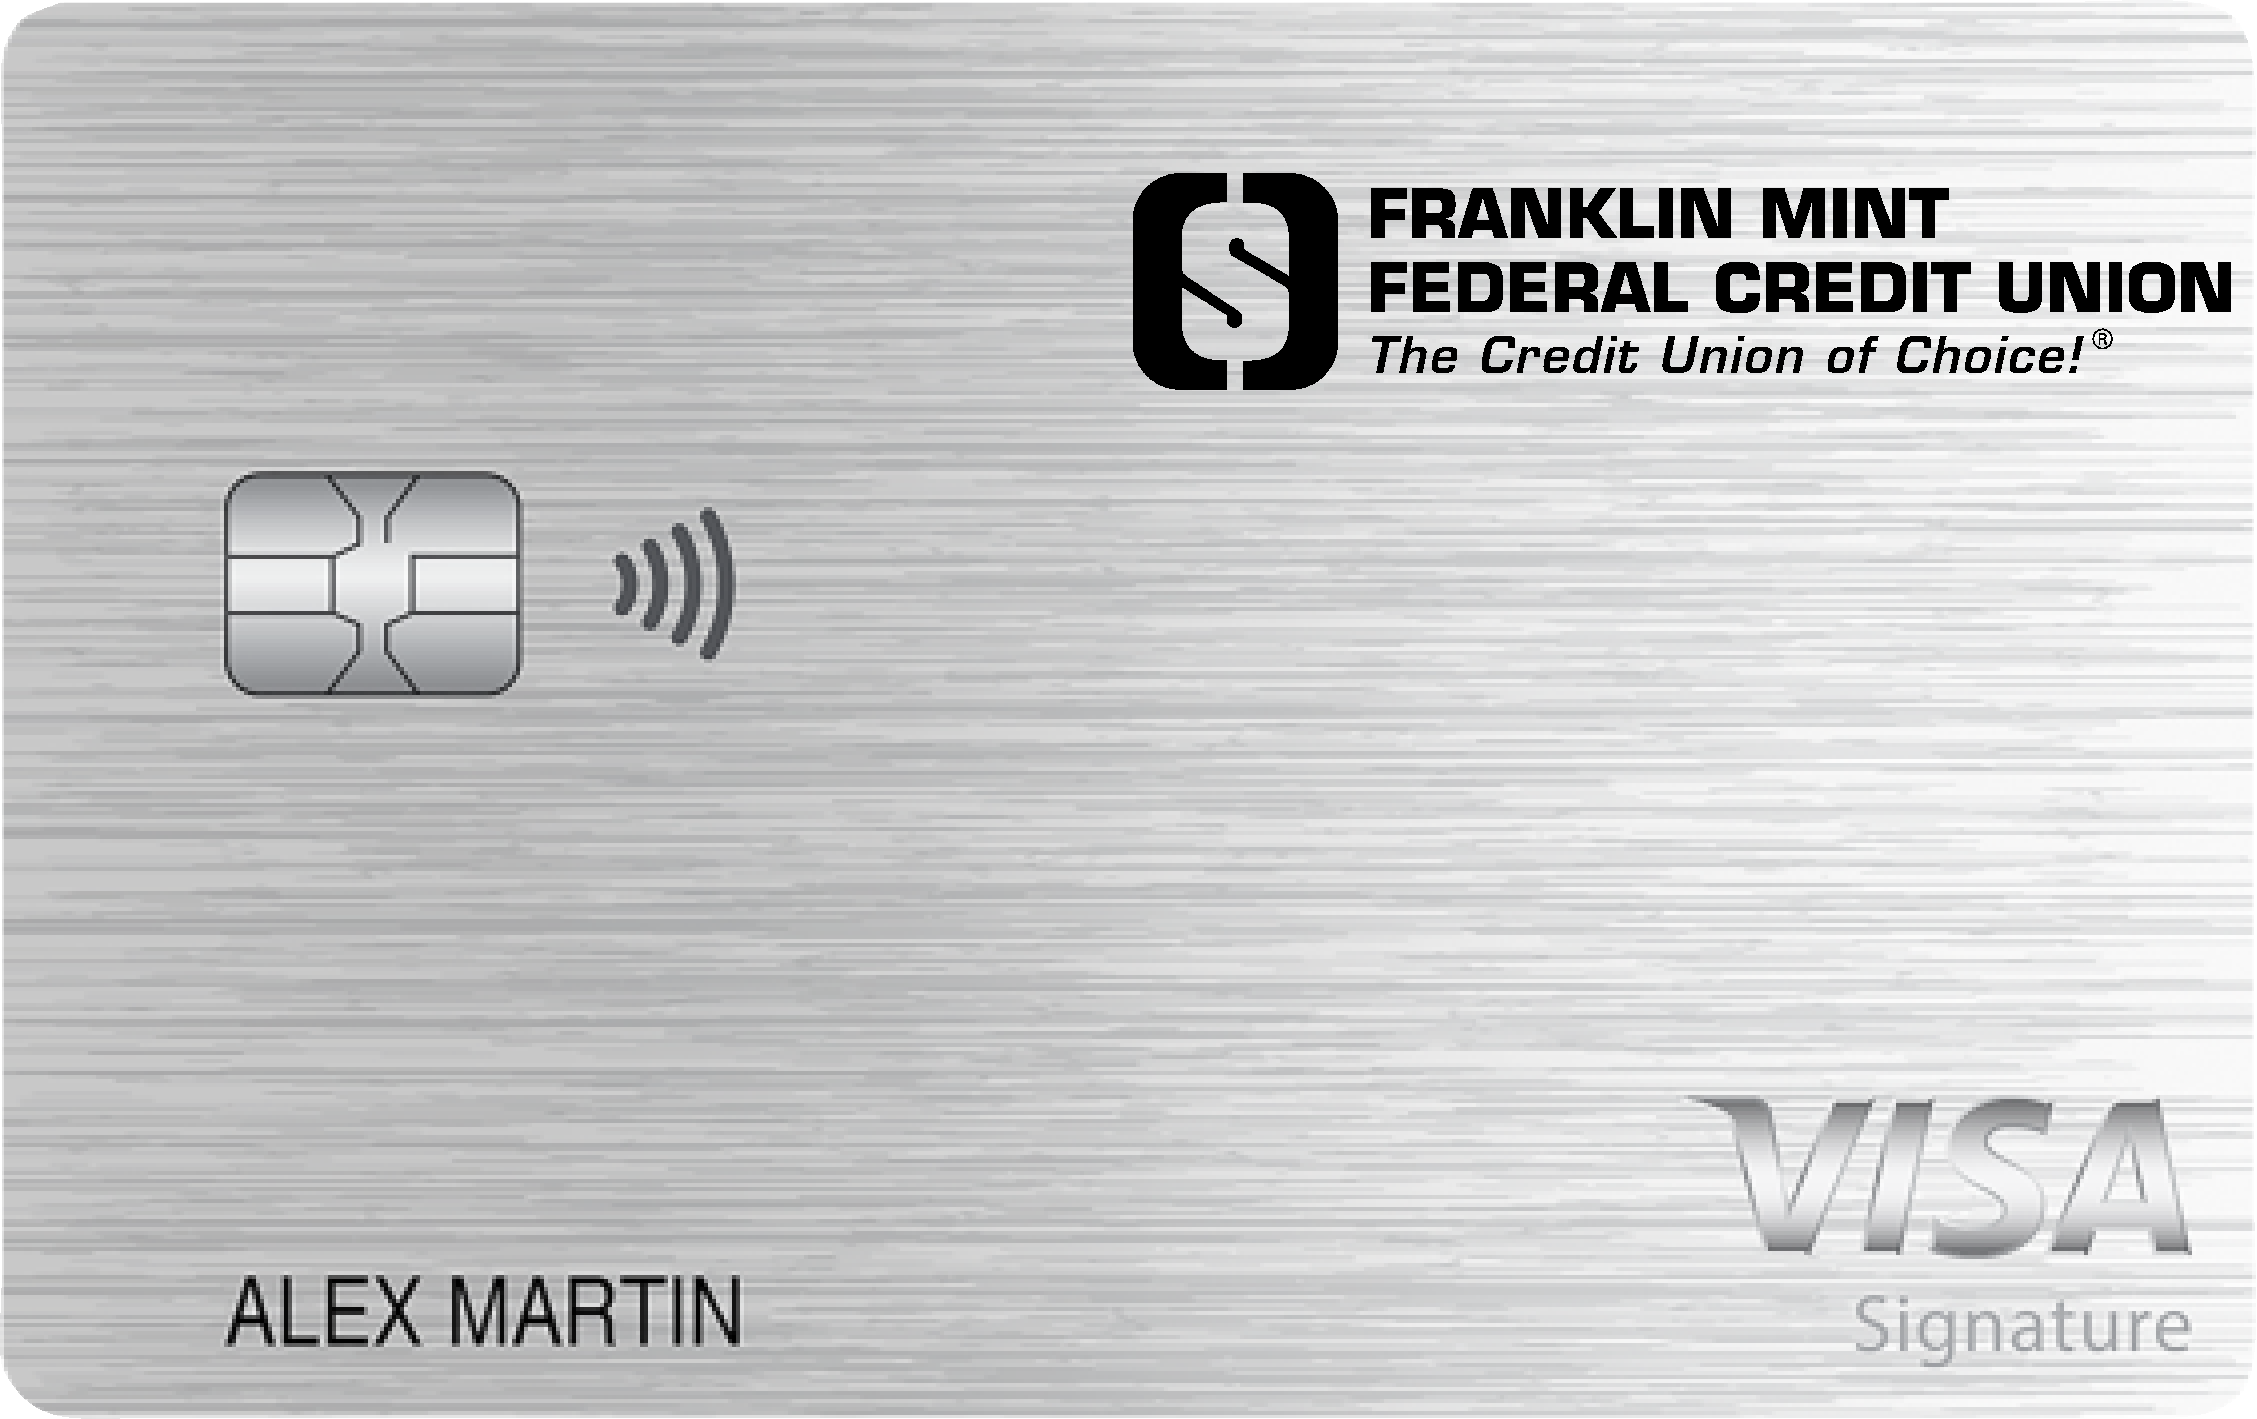 Franklin Mint Federal Credit Union Travel Rewards+ Card